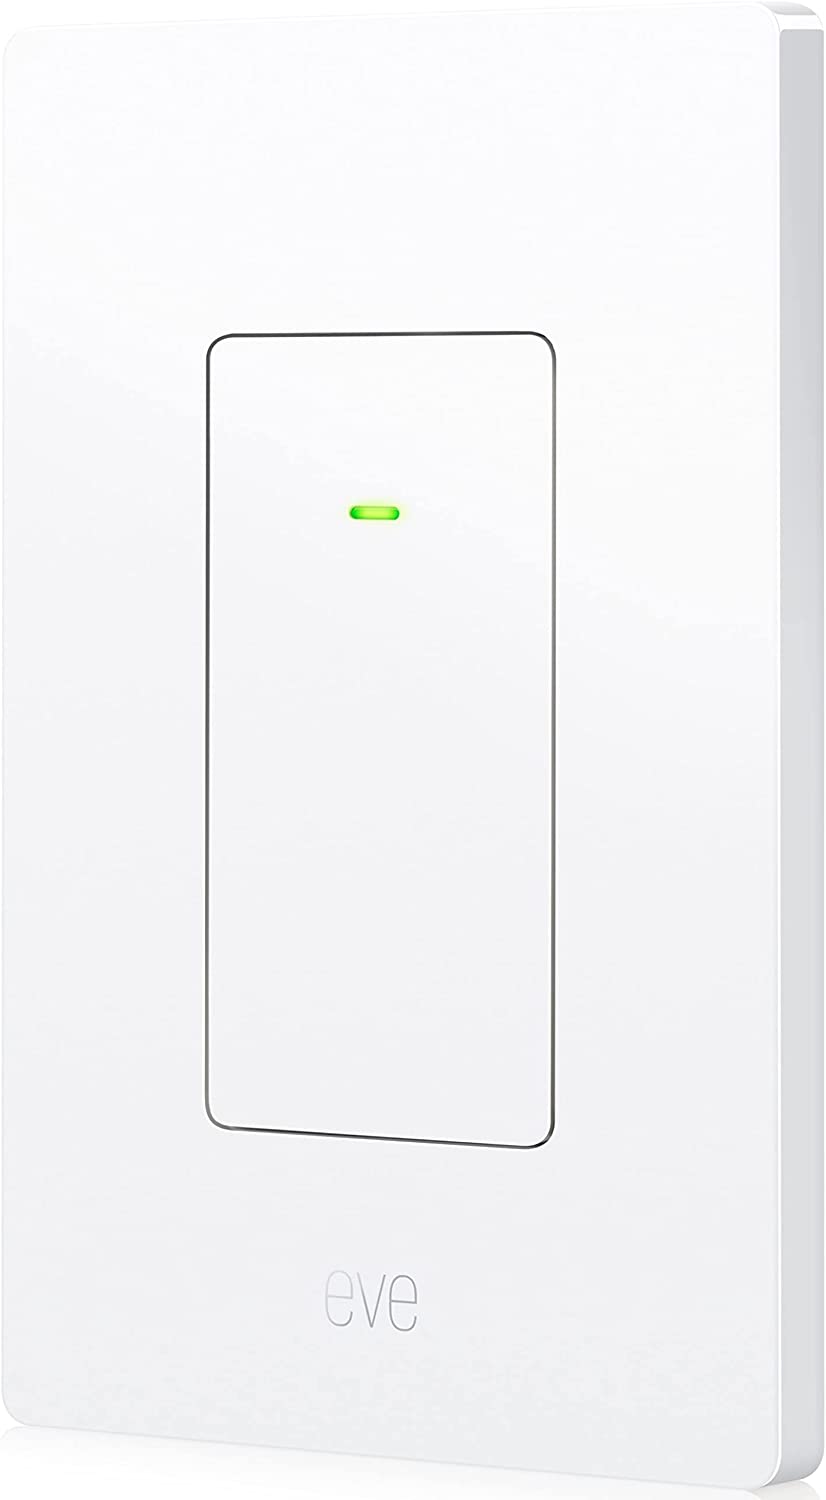 Eve Door & Window – Apple HomeKit Smart Home Wireless Contact Sensor For Windows & Doors, Automatically Trigger Accessories & Scenes, App Notifications, Bluetooth/Thread, 3 Pack